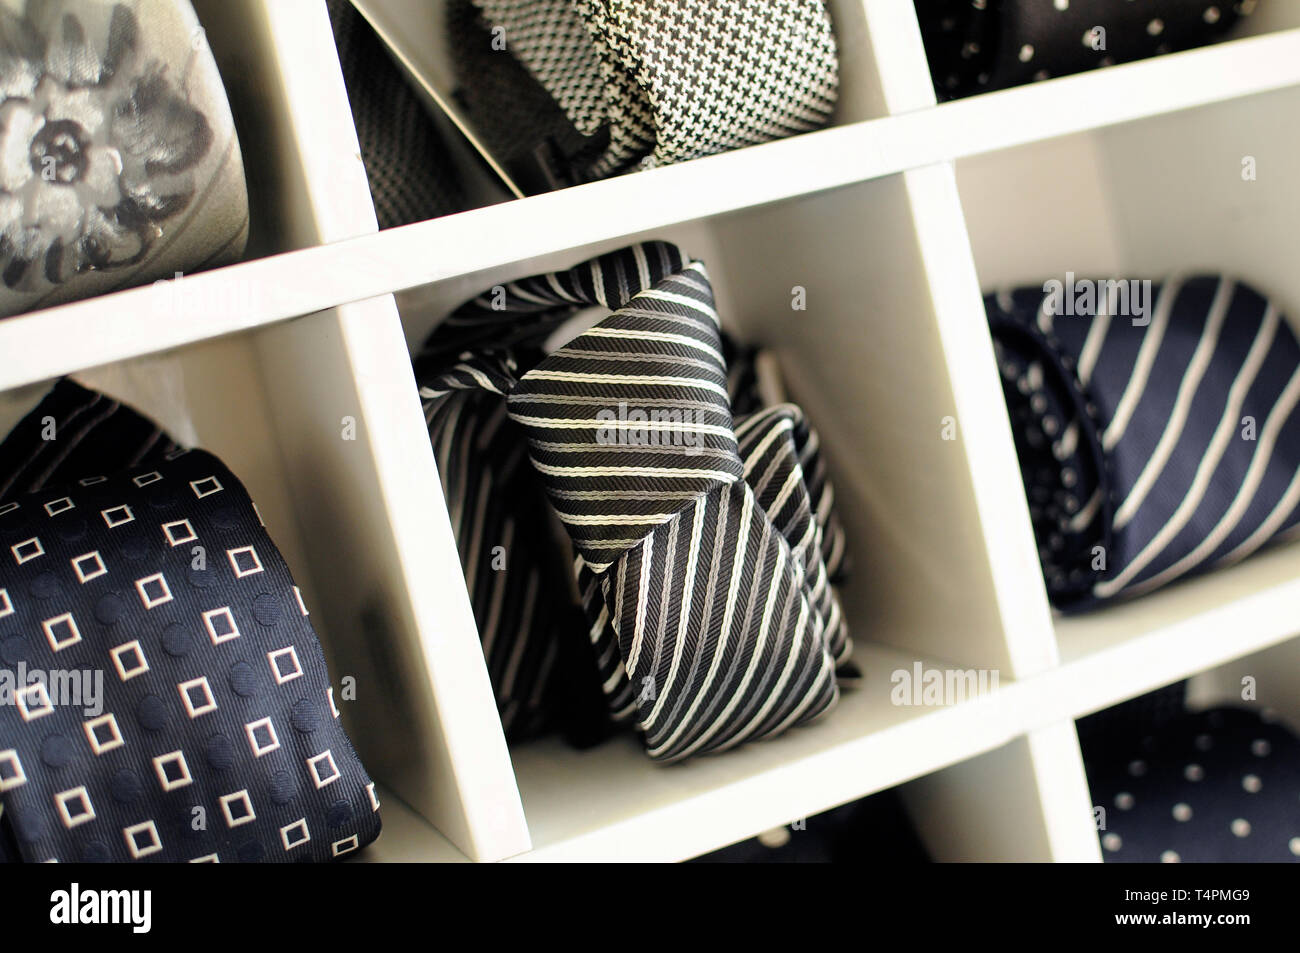 Visualización de corbatas o lazos con patrones clásicos y colores en compartimentos individuales en un gabinete de madera en una tienda de moda para hombres Foto de stock